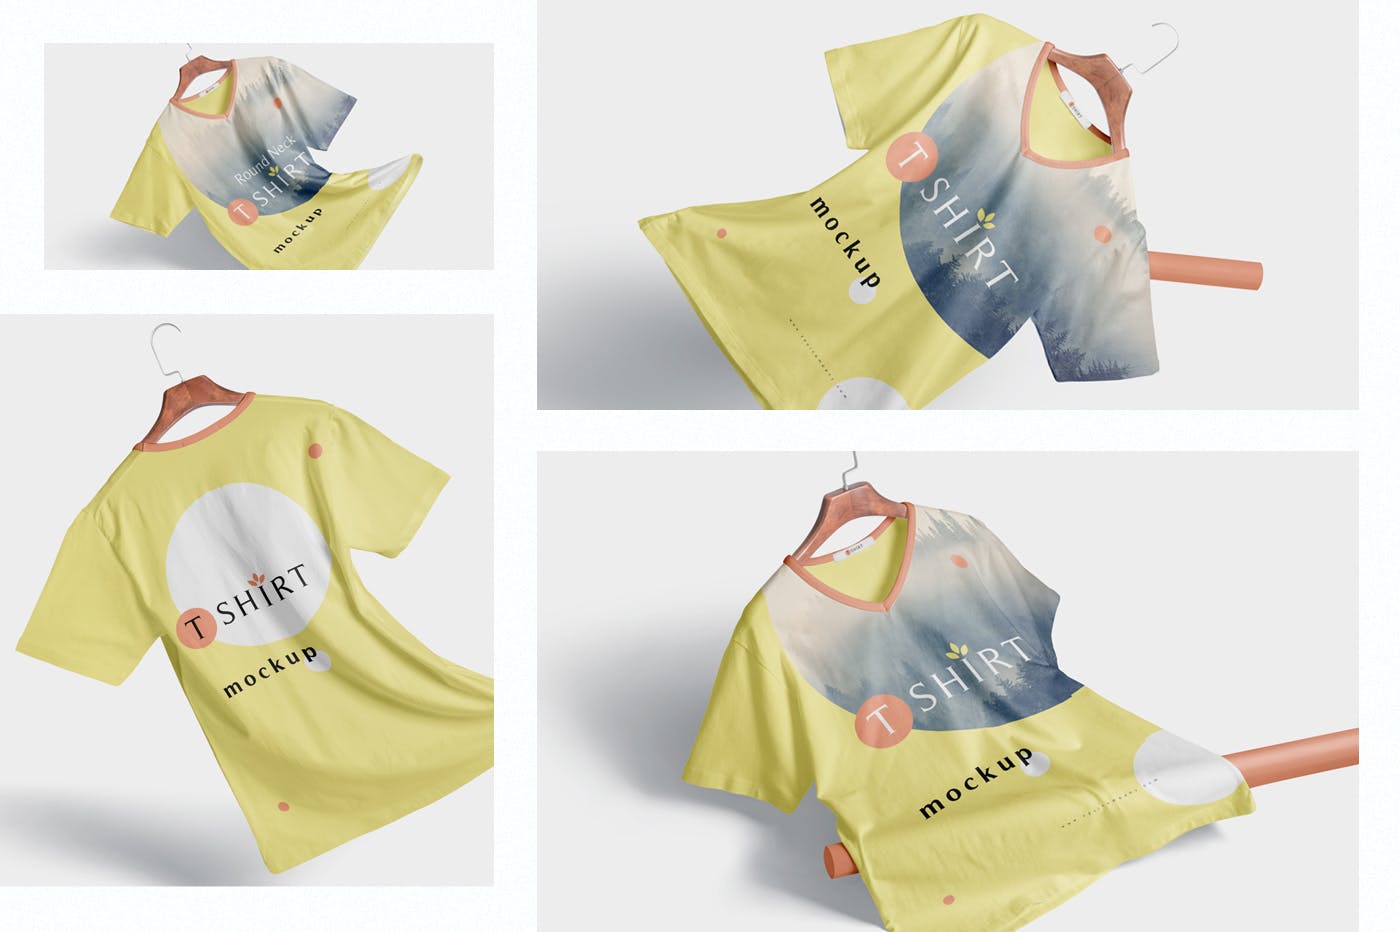 高品质T恤印花设计多角度预览效果图样机 Premium Quality T-shirt Mockup Scenes插图(1)